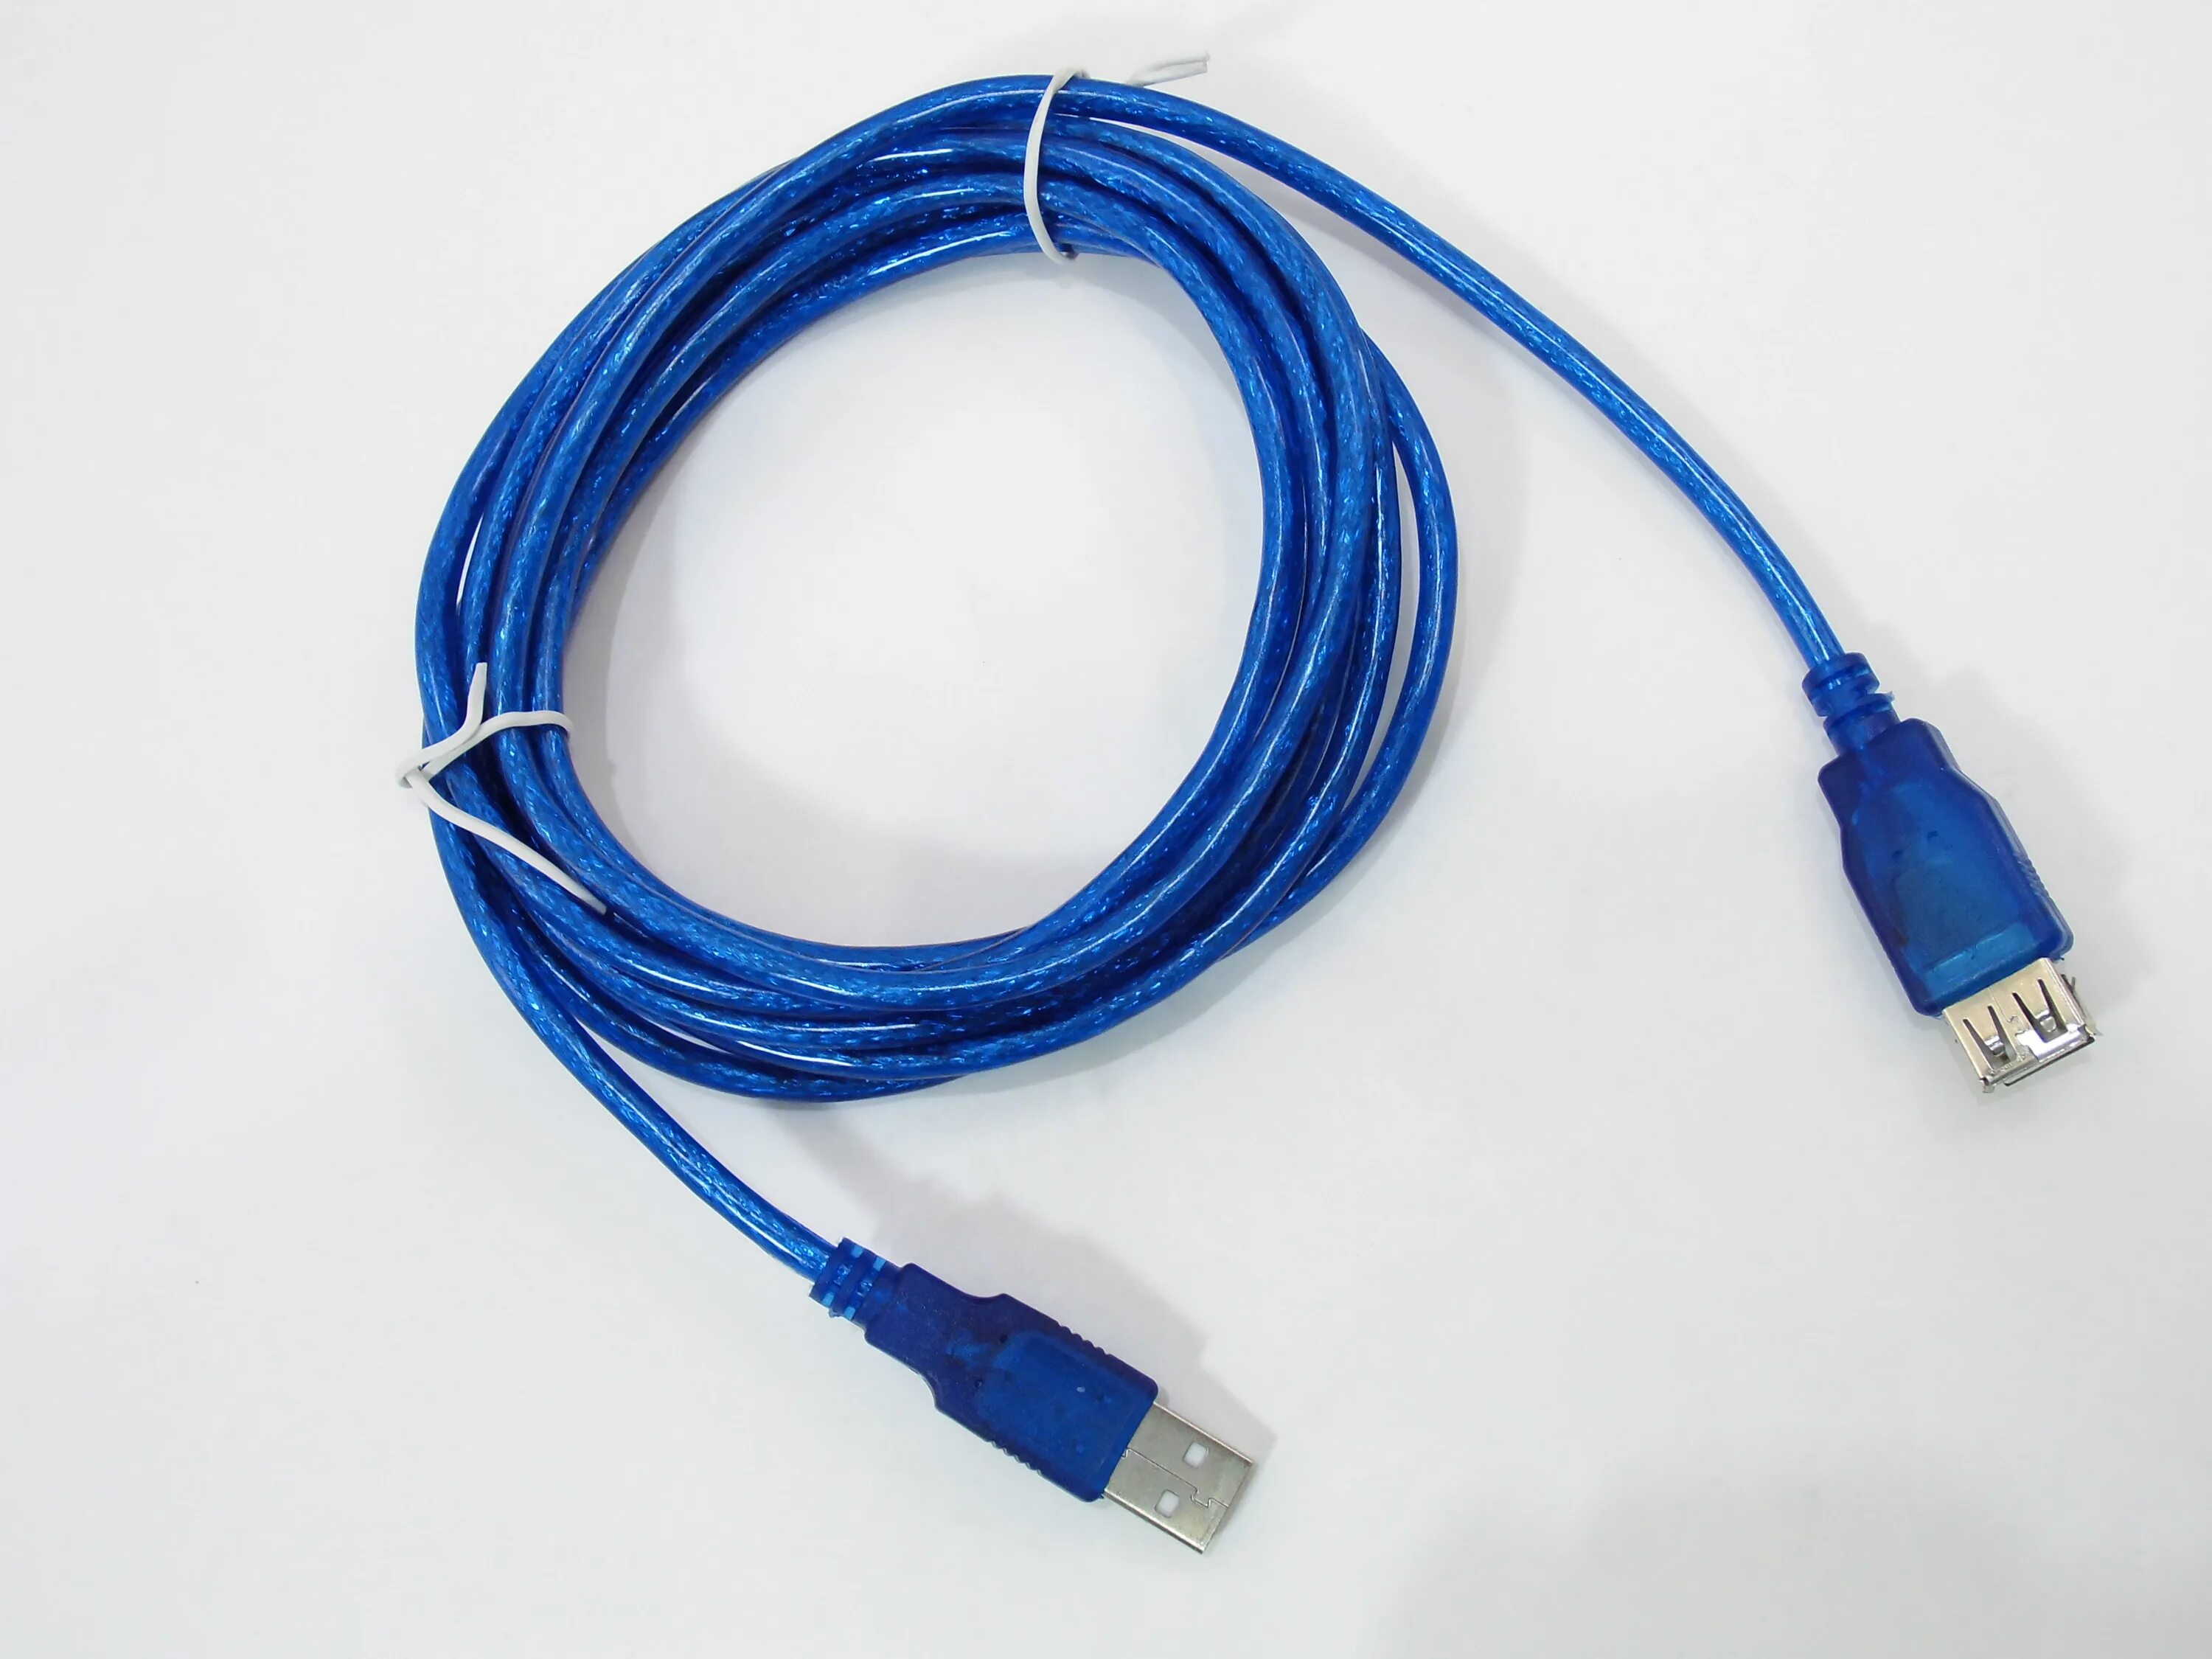 Hama USB 3.0 удлинитель. Удлинитель юсб 3.0. USB 3.0 кабель ДНС. Кабель-удлинитель USB3.0 1 метр.